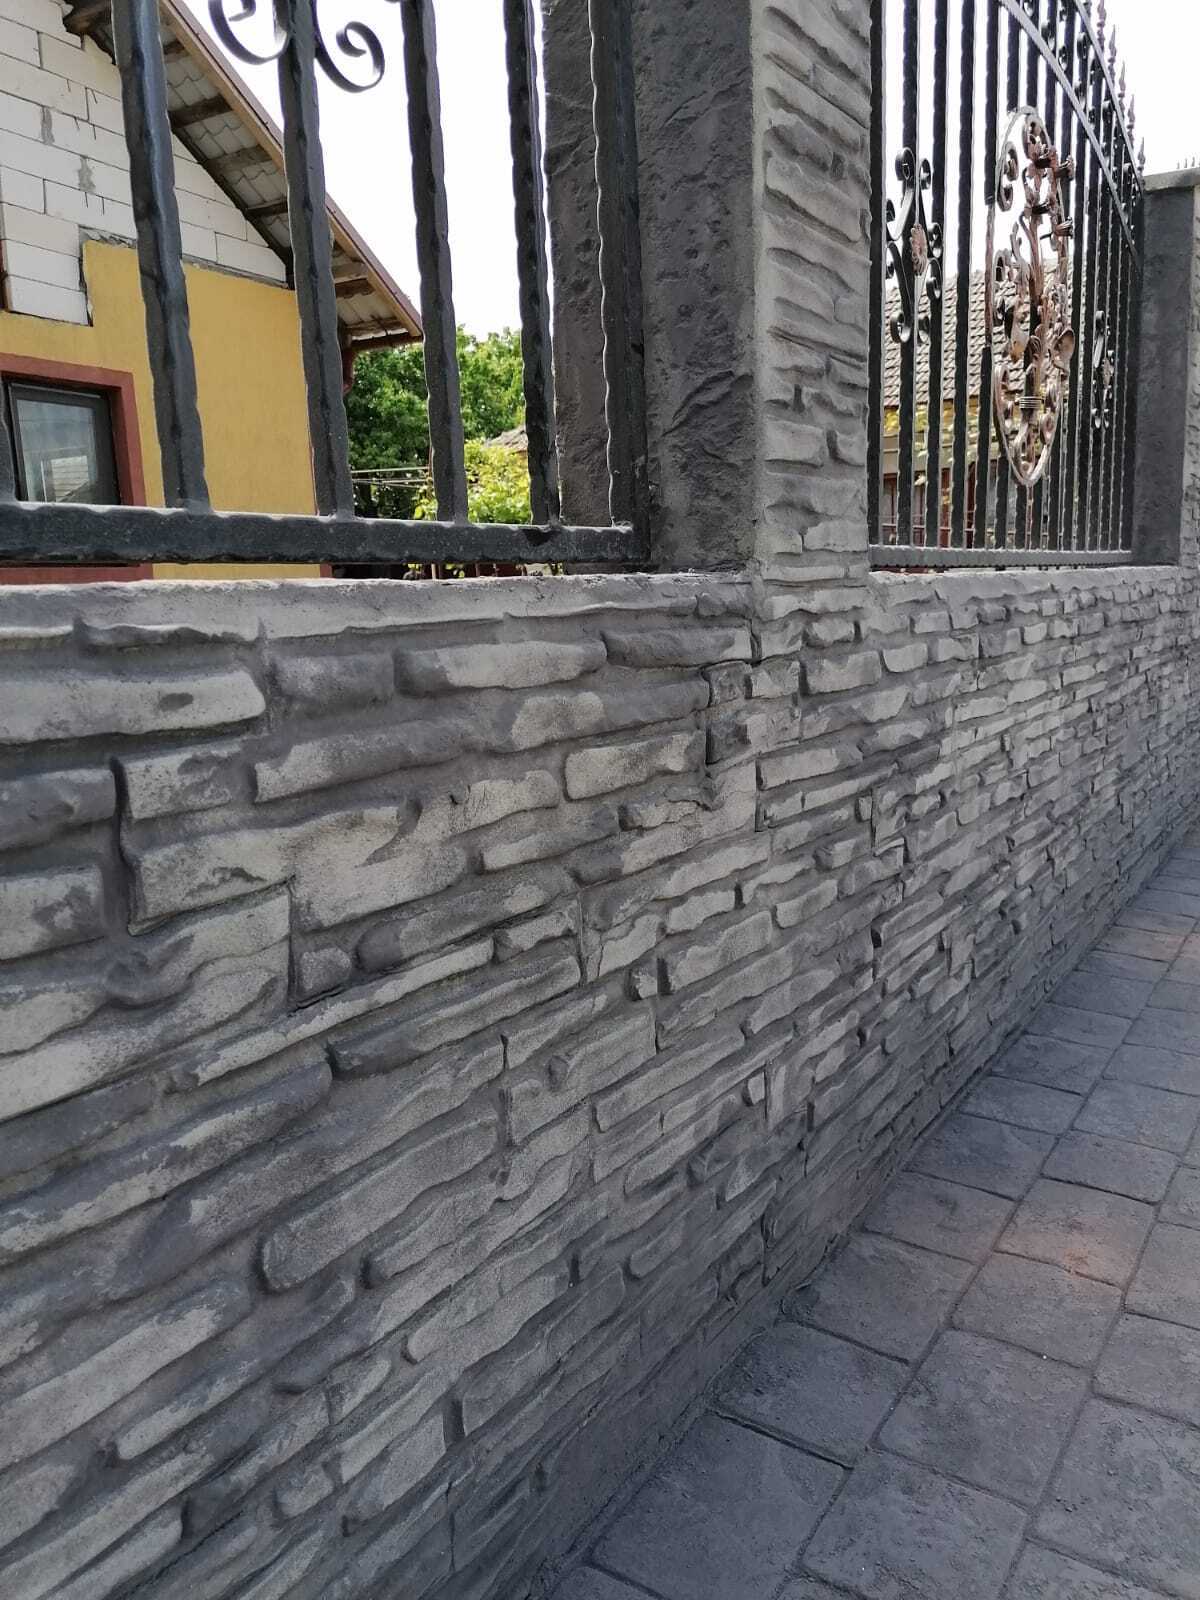 fachada casa concreto impresso vertical imitação pedra